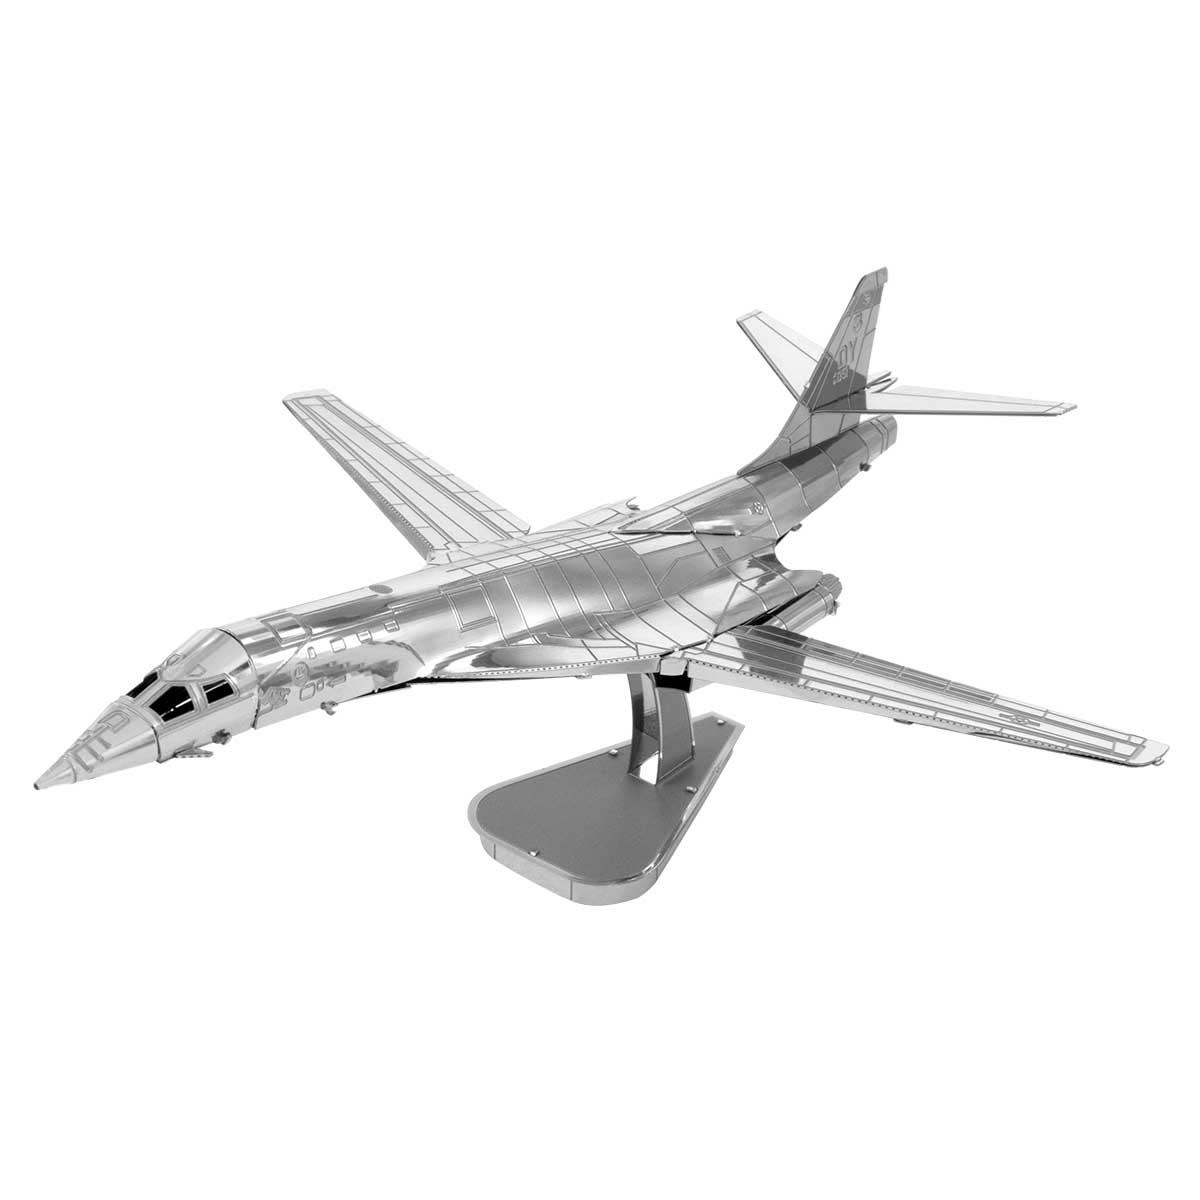 B-1 Lancer Plane 3D Puzzle